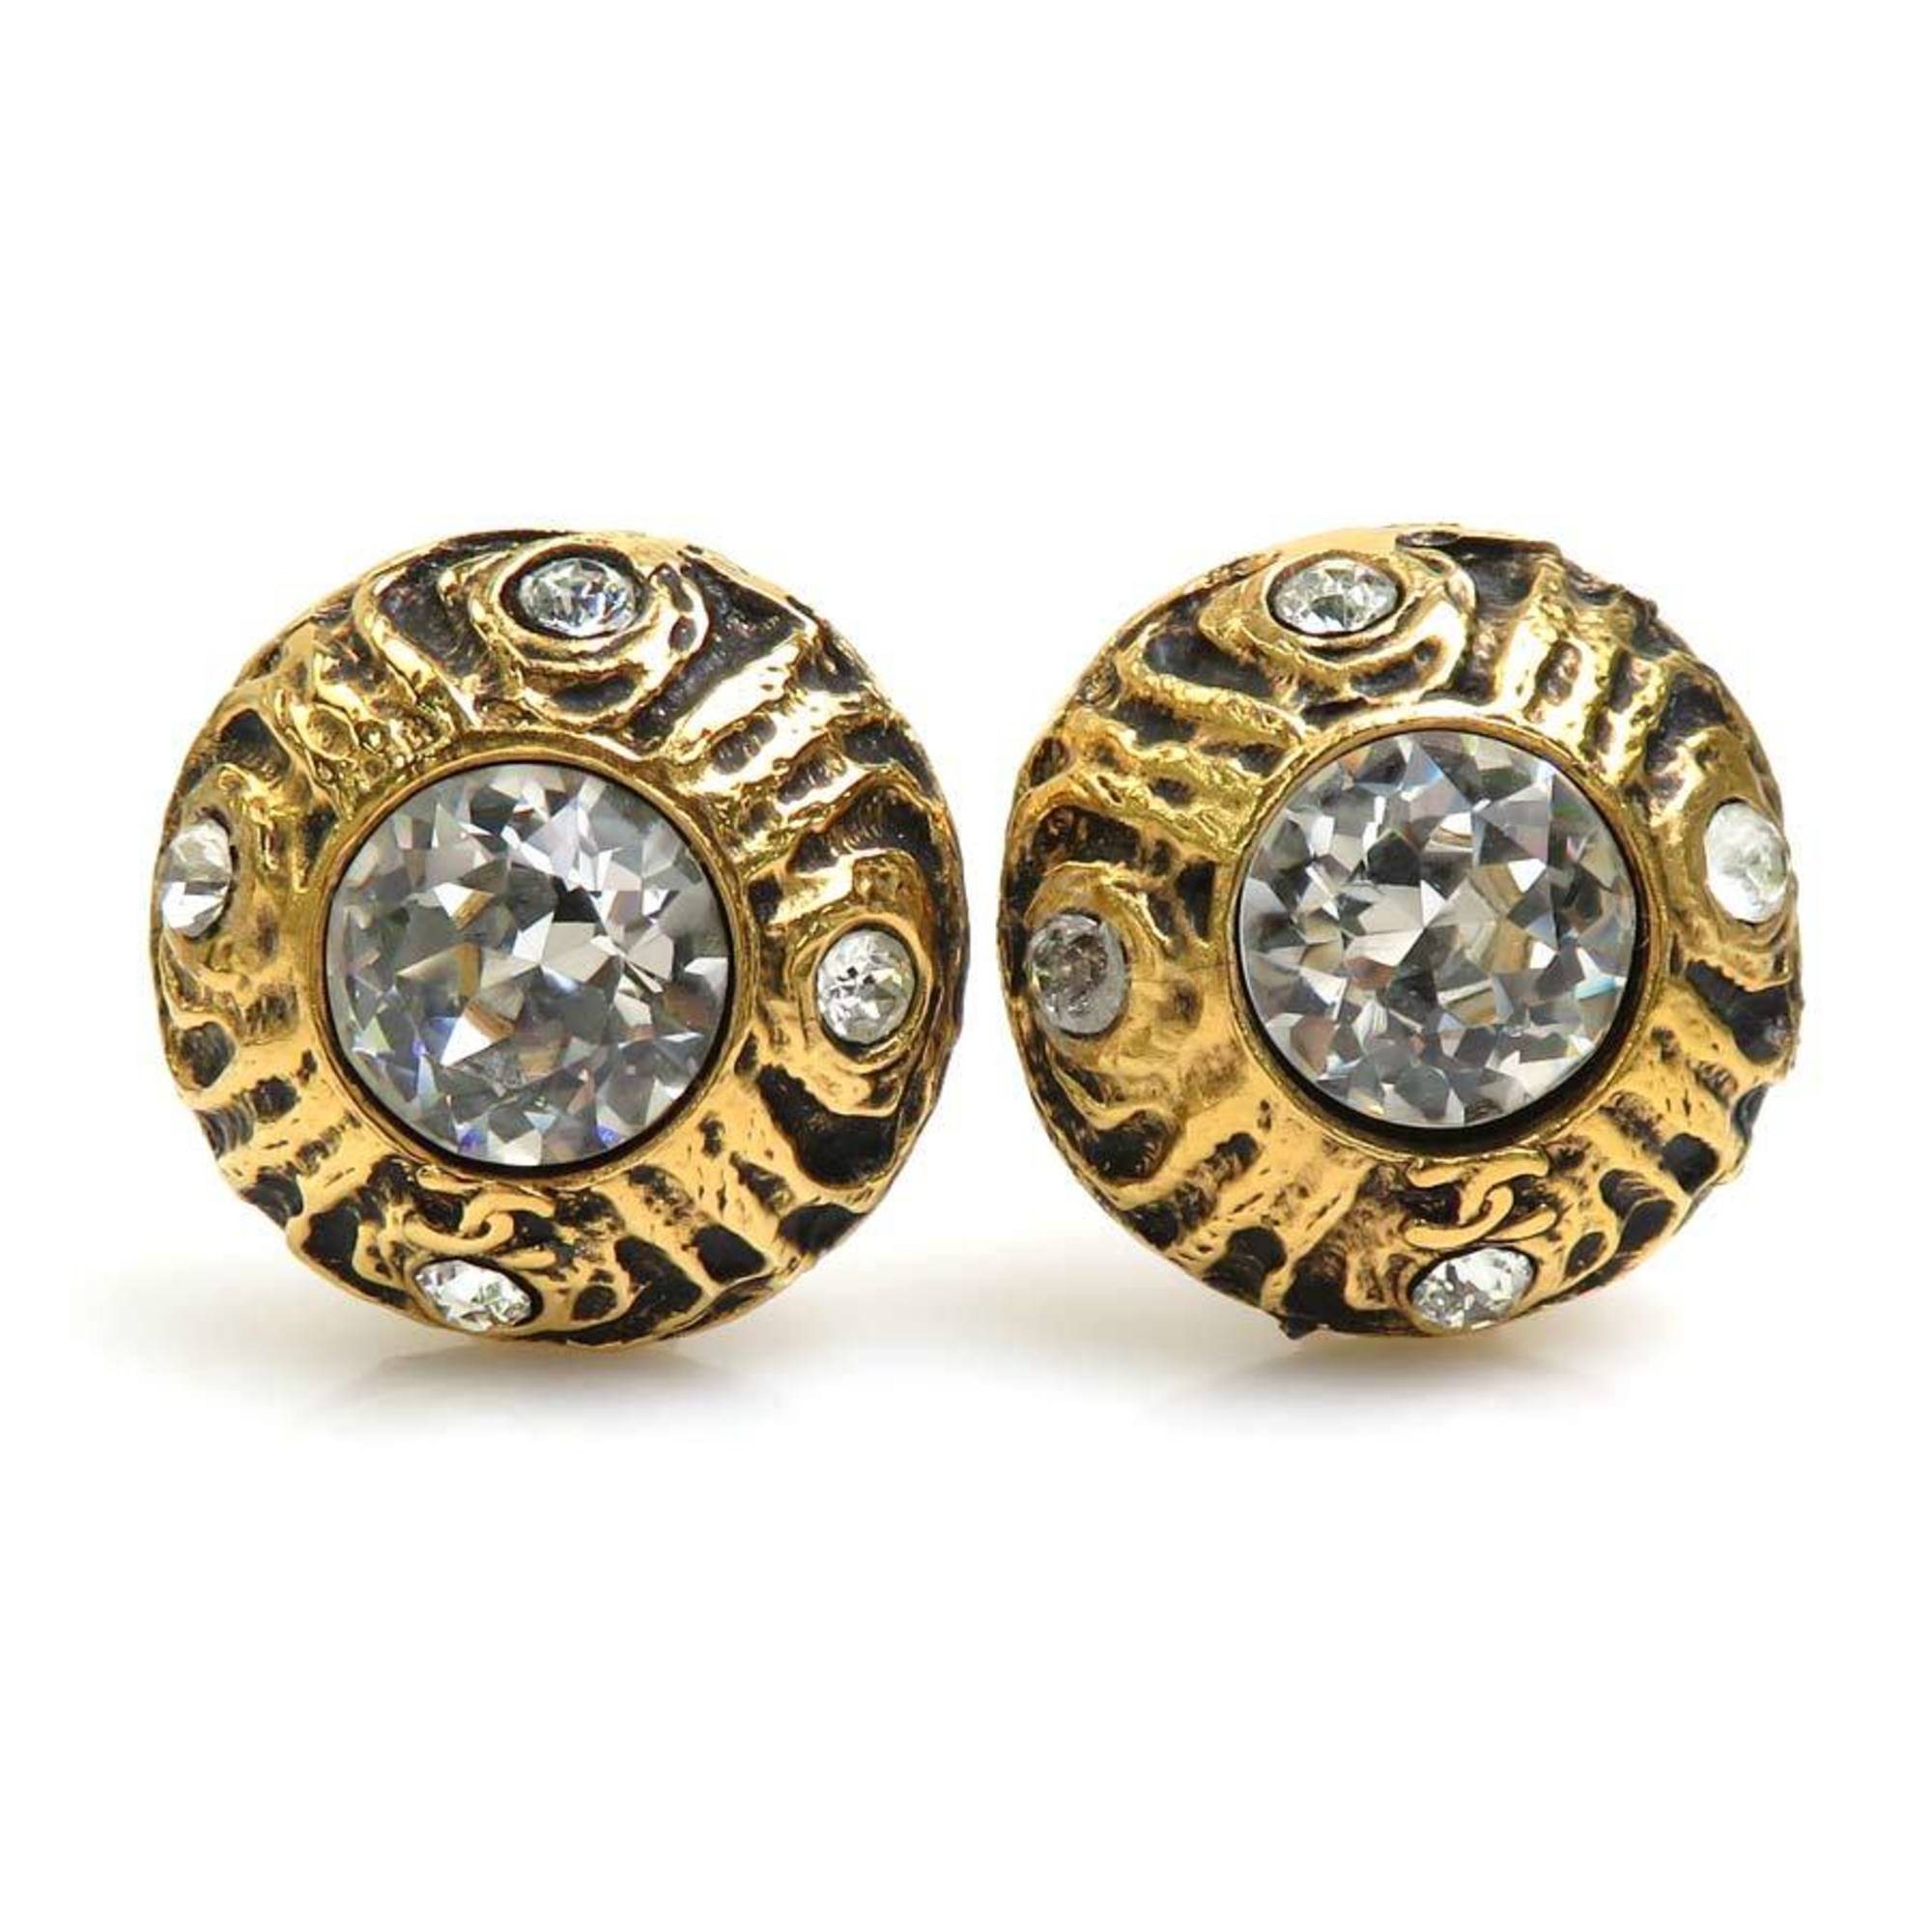 Chanel CHANEL Earrings Metal/Rhinestone Gold/Silver Women's e55832a